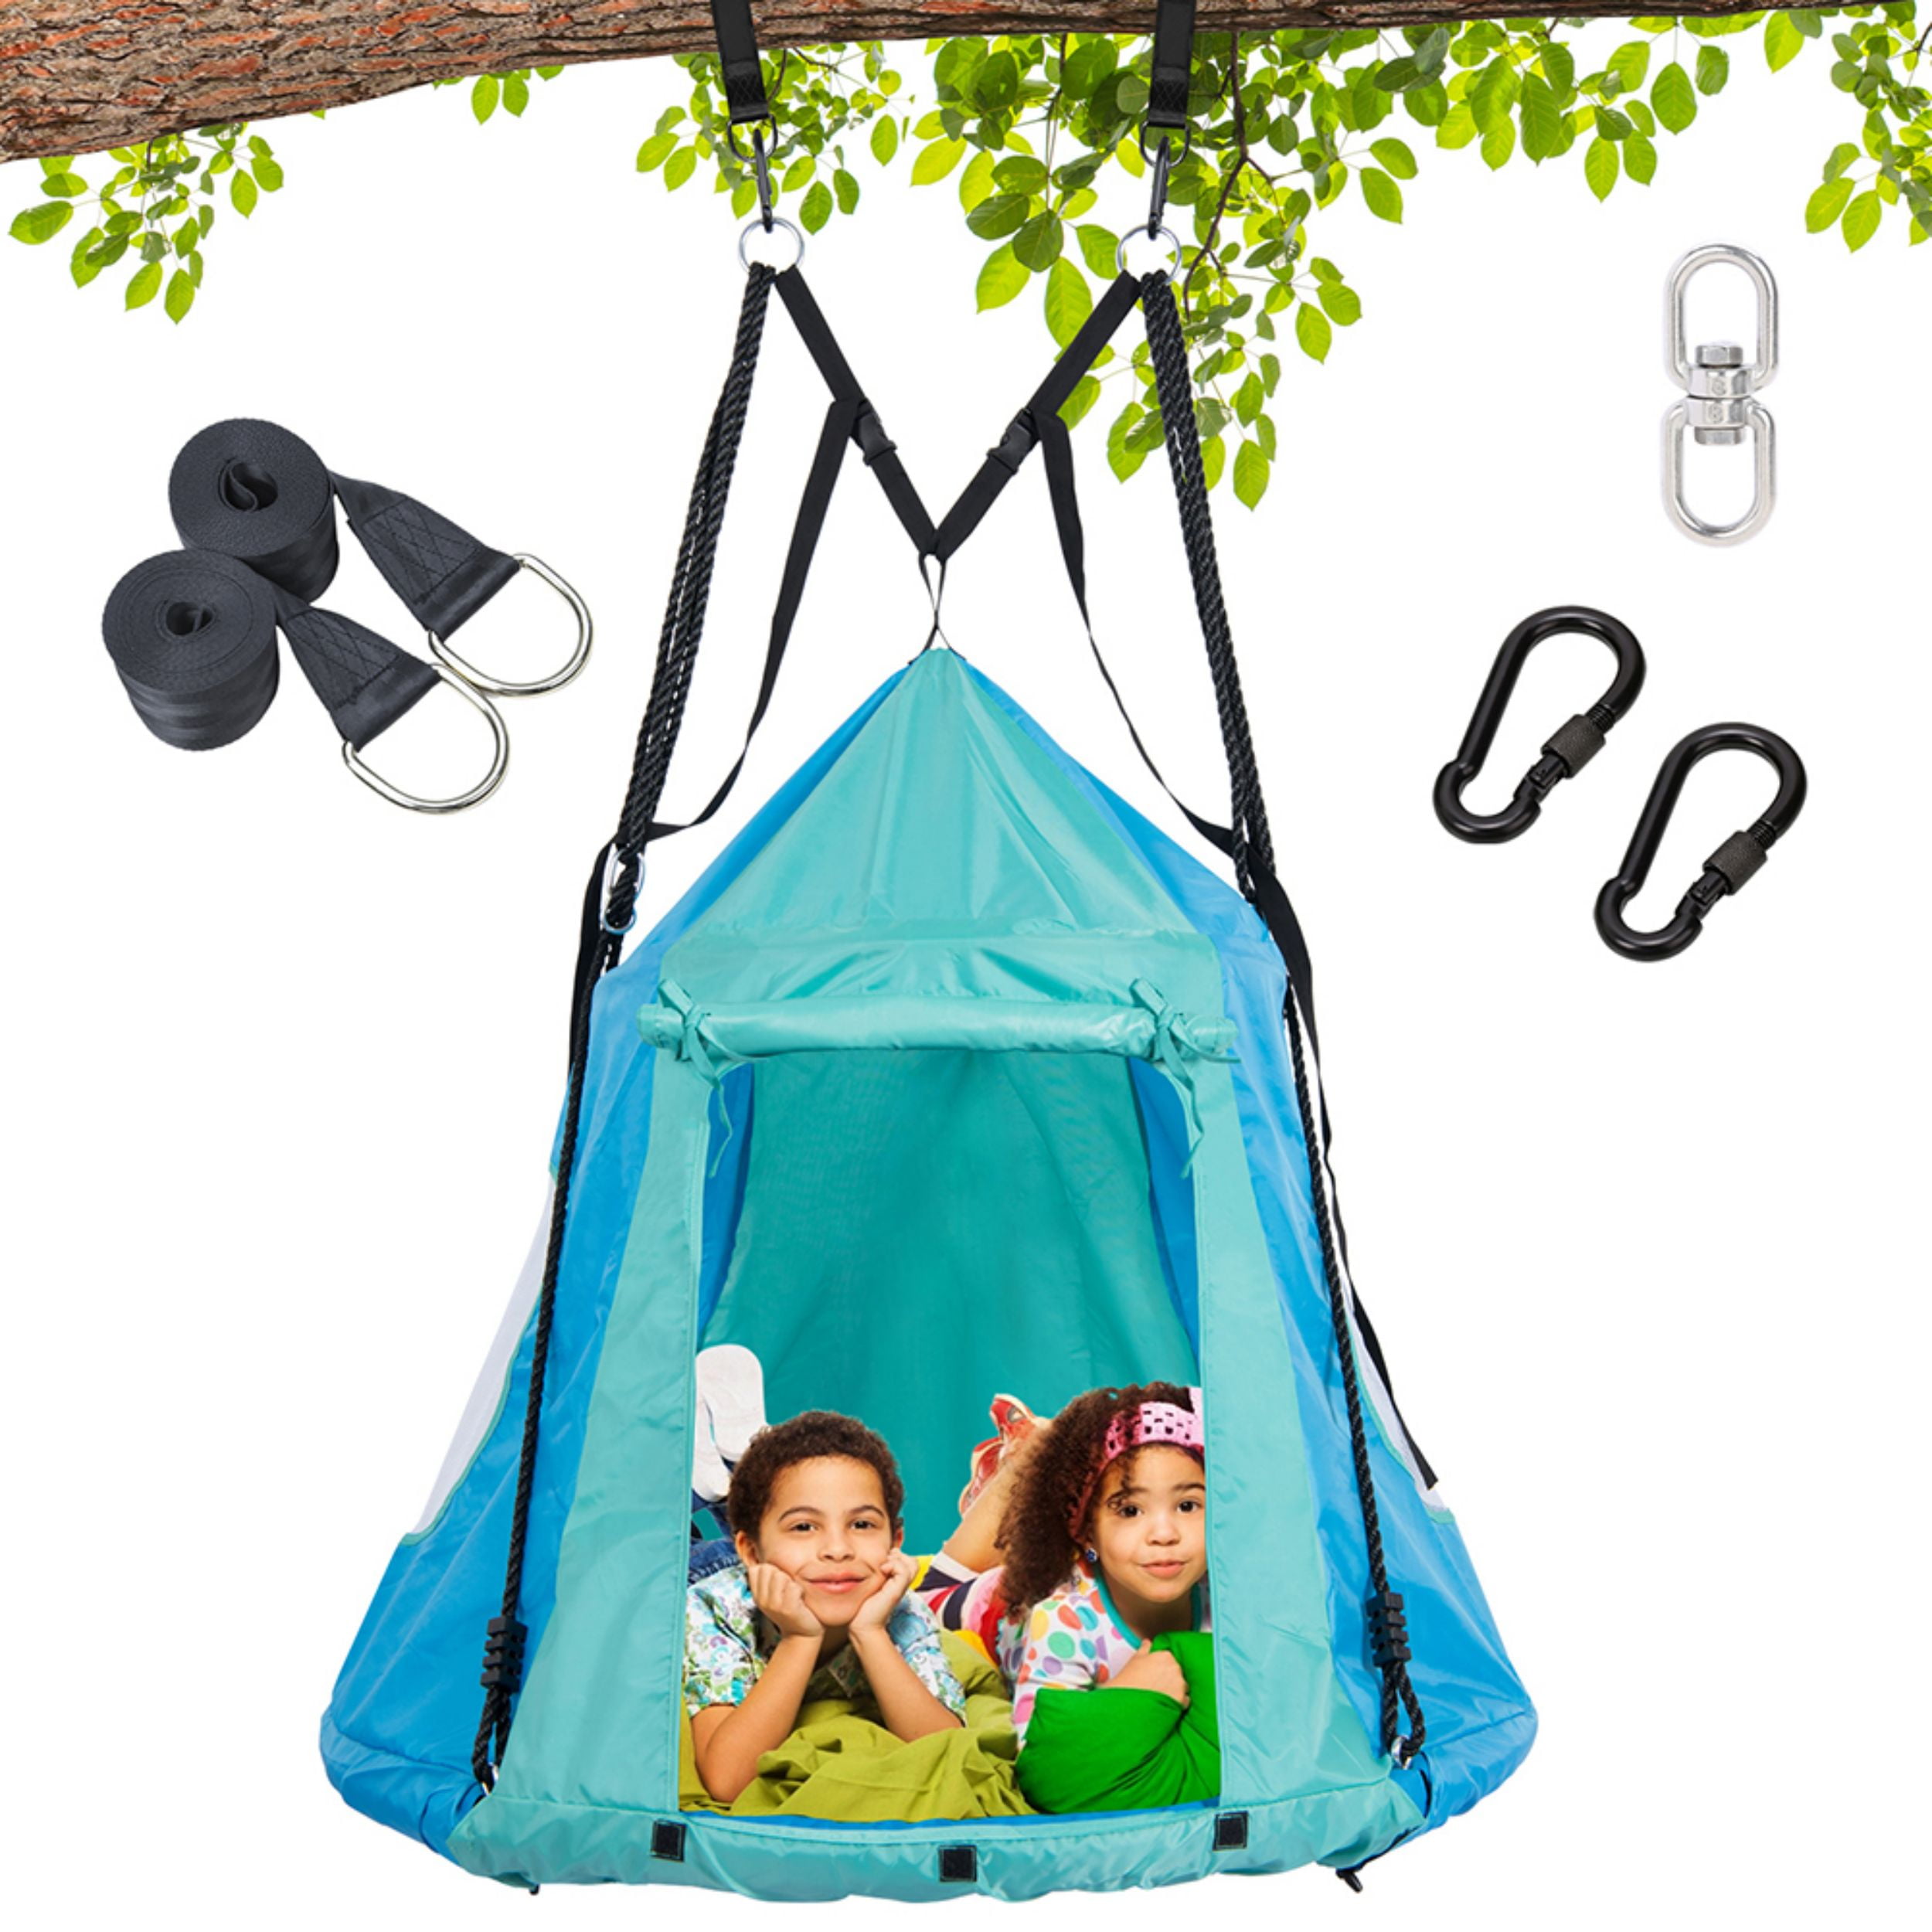 45dx54 H Blue Details about   VEVOR Go HangOut HugglePod Hanging Tree Tent with LED Lights 